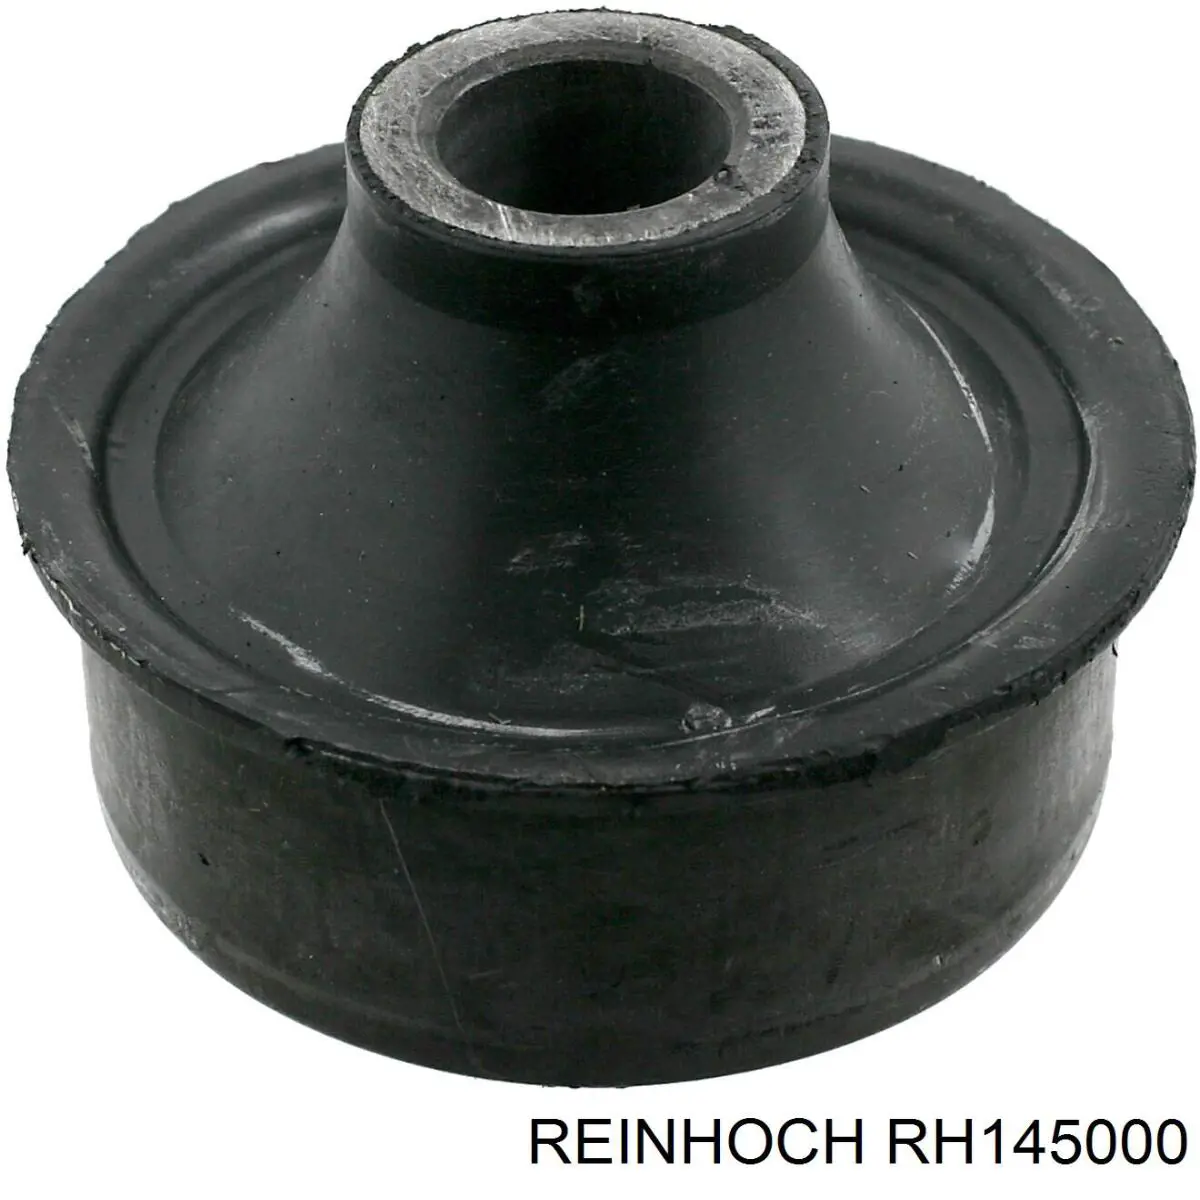 RH145000 Reinhoch silentblock de suspensión delantero inferior